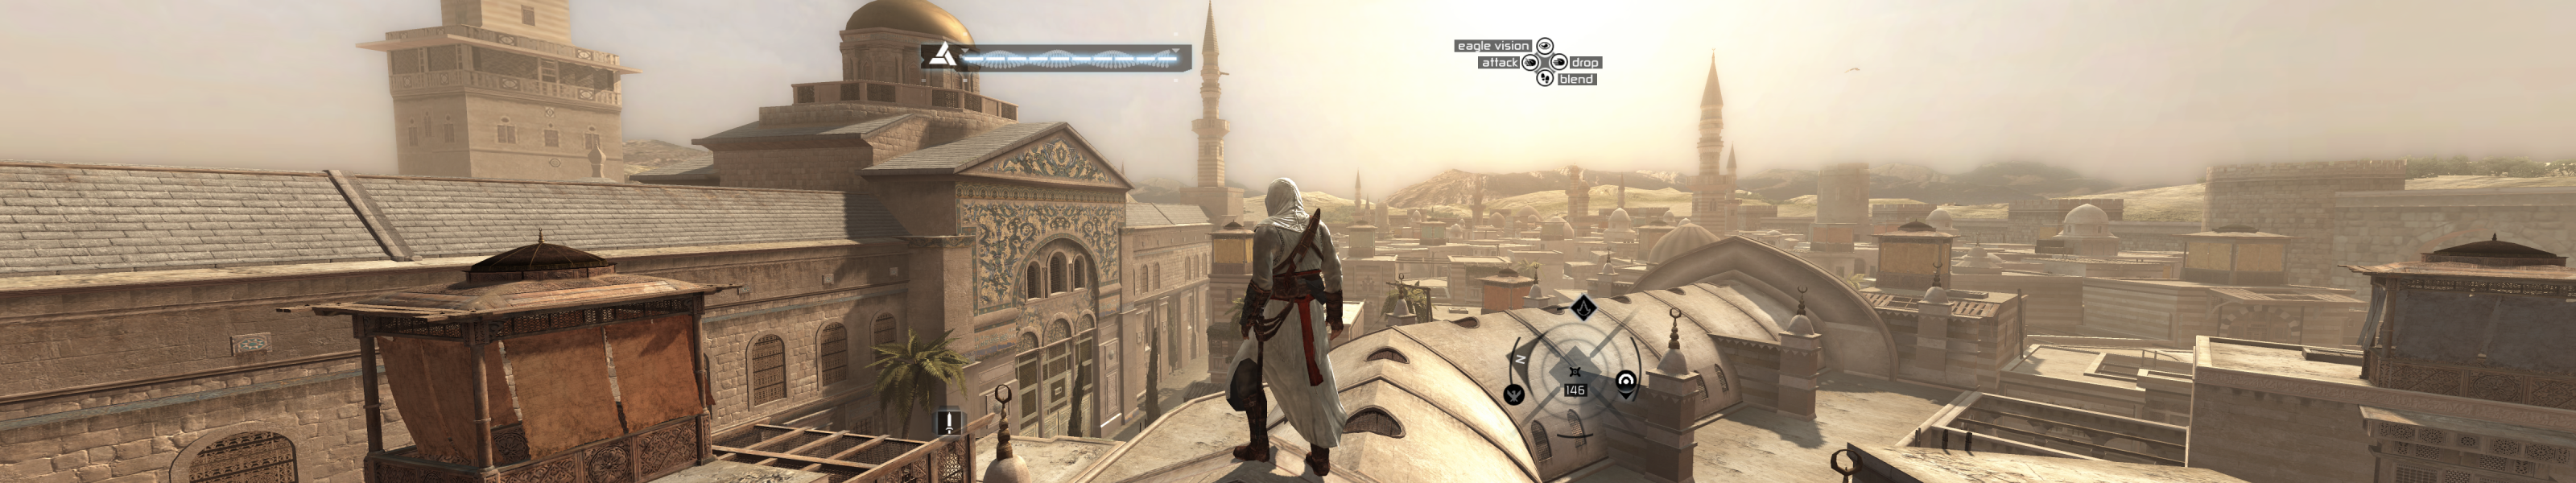 Обновление ассасин крид. Дамаск (город) места из Assassins Creed. Дом премьер министра ассасин Крид. Полет над Венецией ассасин Крид.